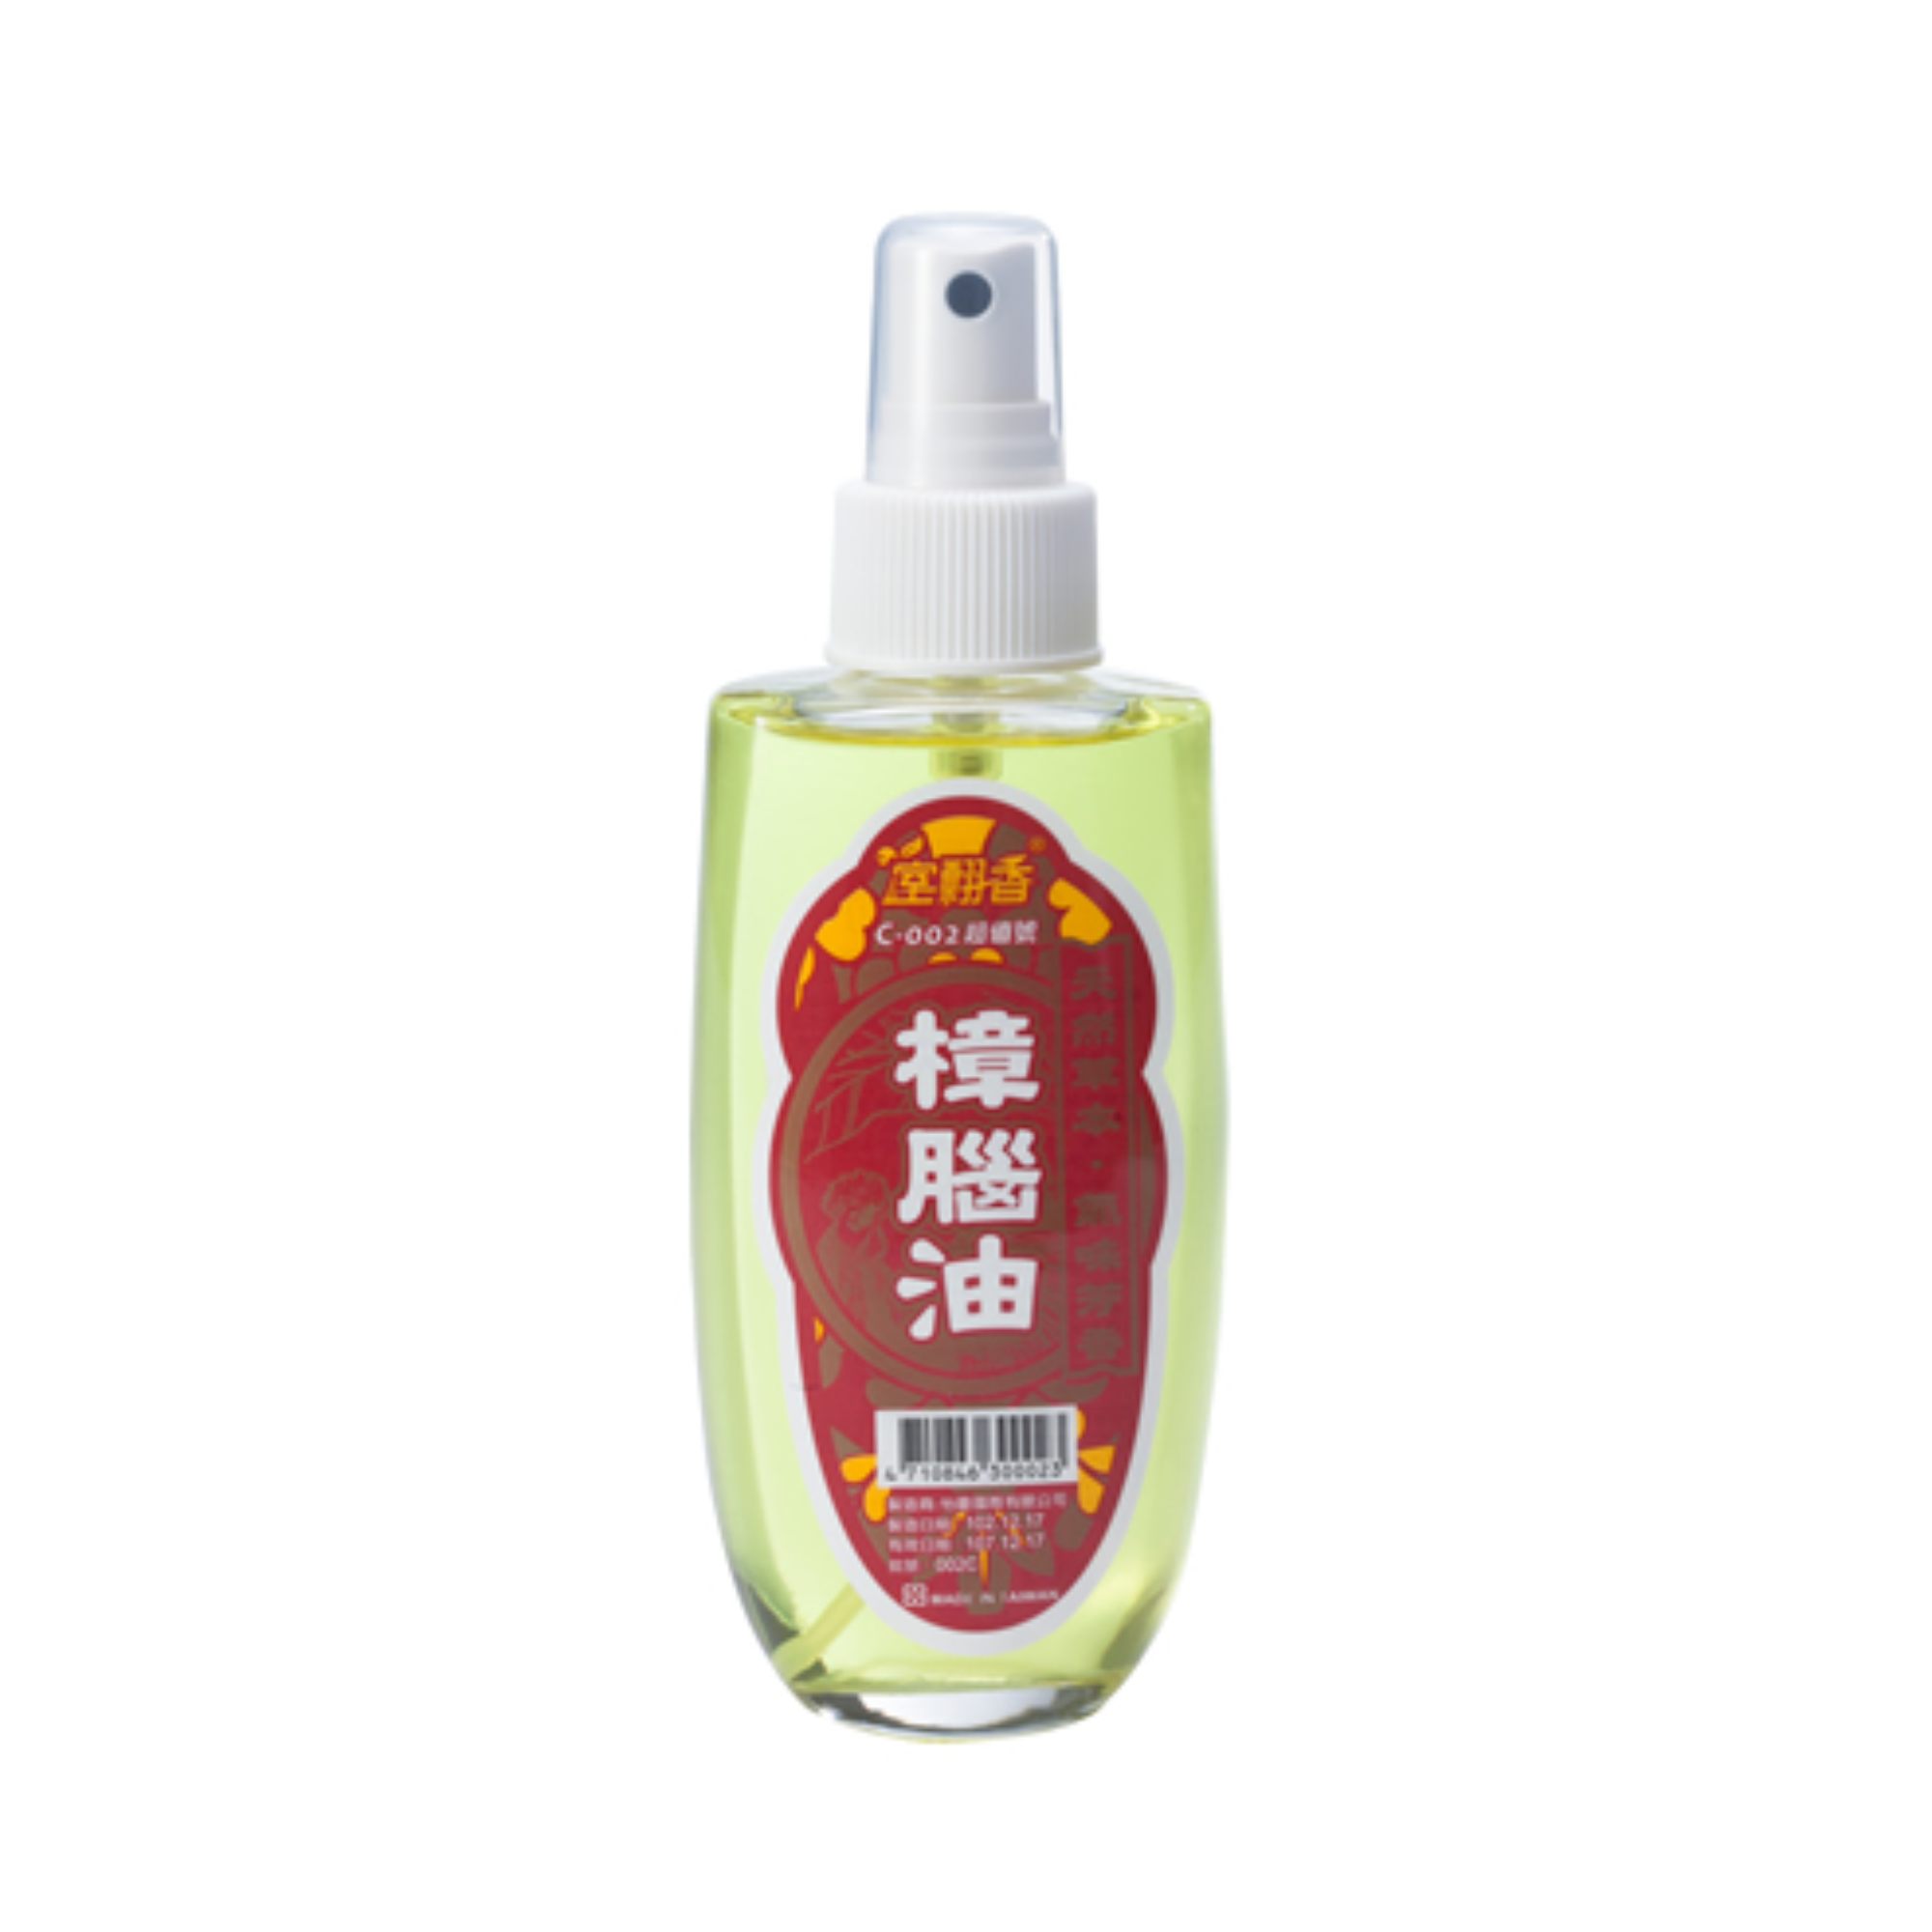 Shi Huixiang Taiwan Natural Camphor Oil (100ml / spray bottle)